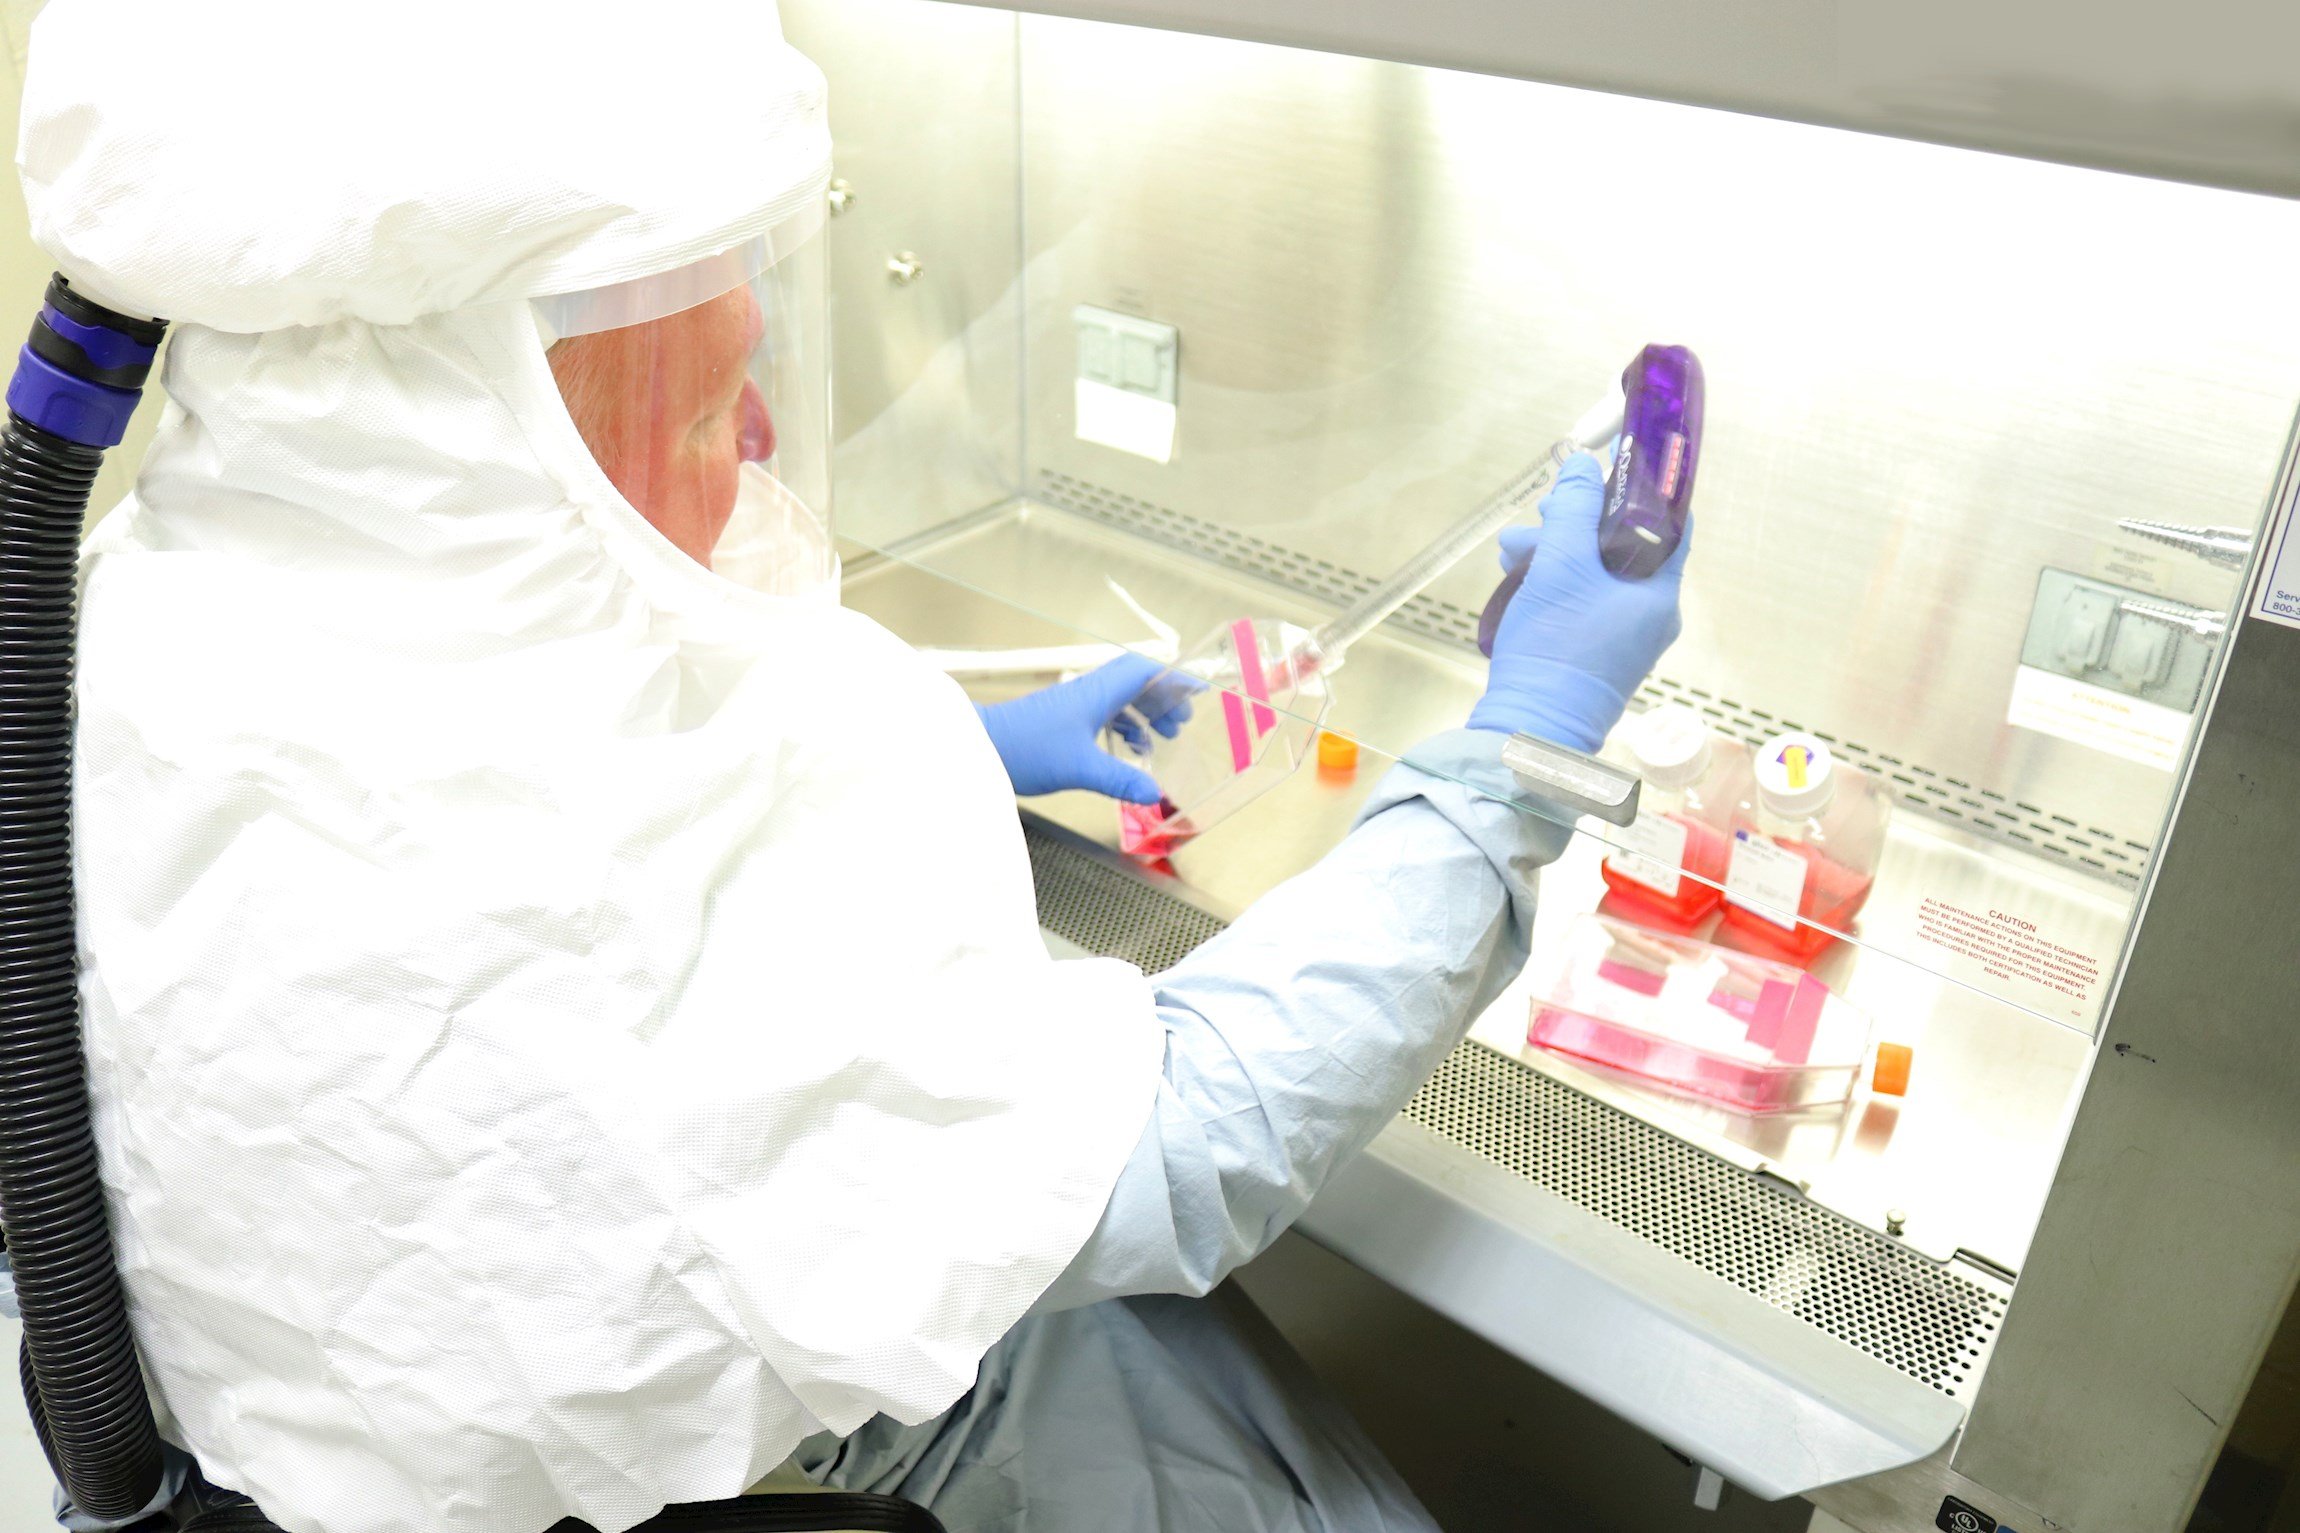 L'OMS llança un assaig clínic mundial per trobar el tractament del coronavirus